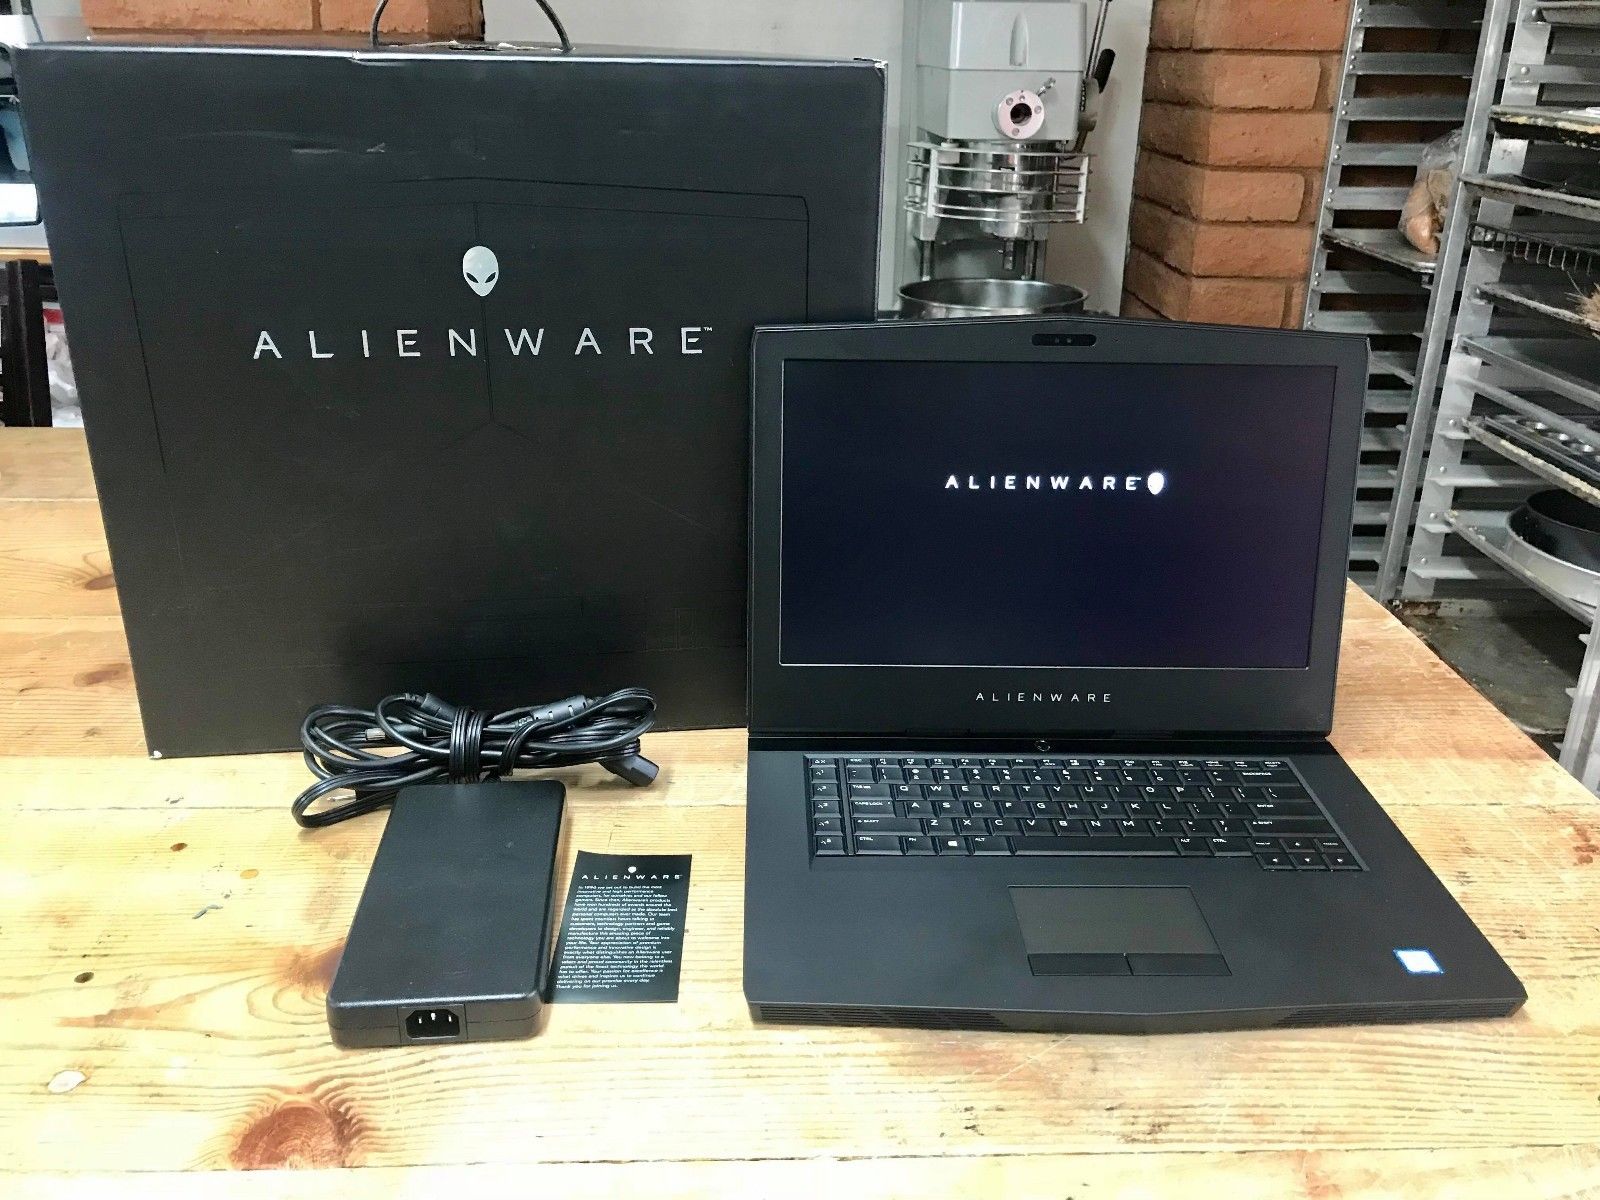 15.6" Alienware 15 R3, i7-7700HQ 2.80GHz, 16GB, 128GB SSD / 1TB HDD, GTX 1070